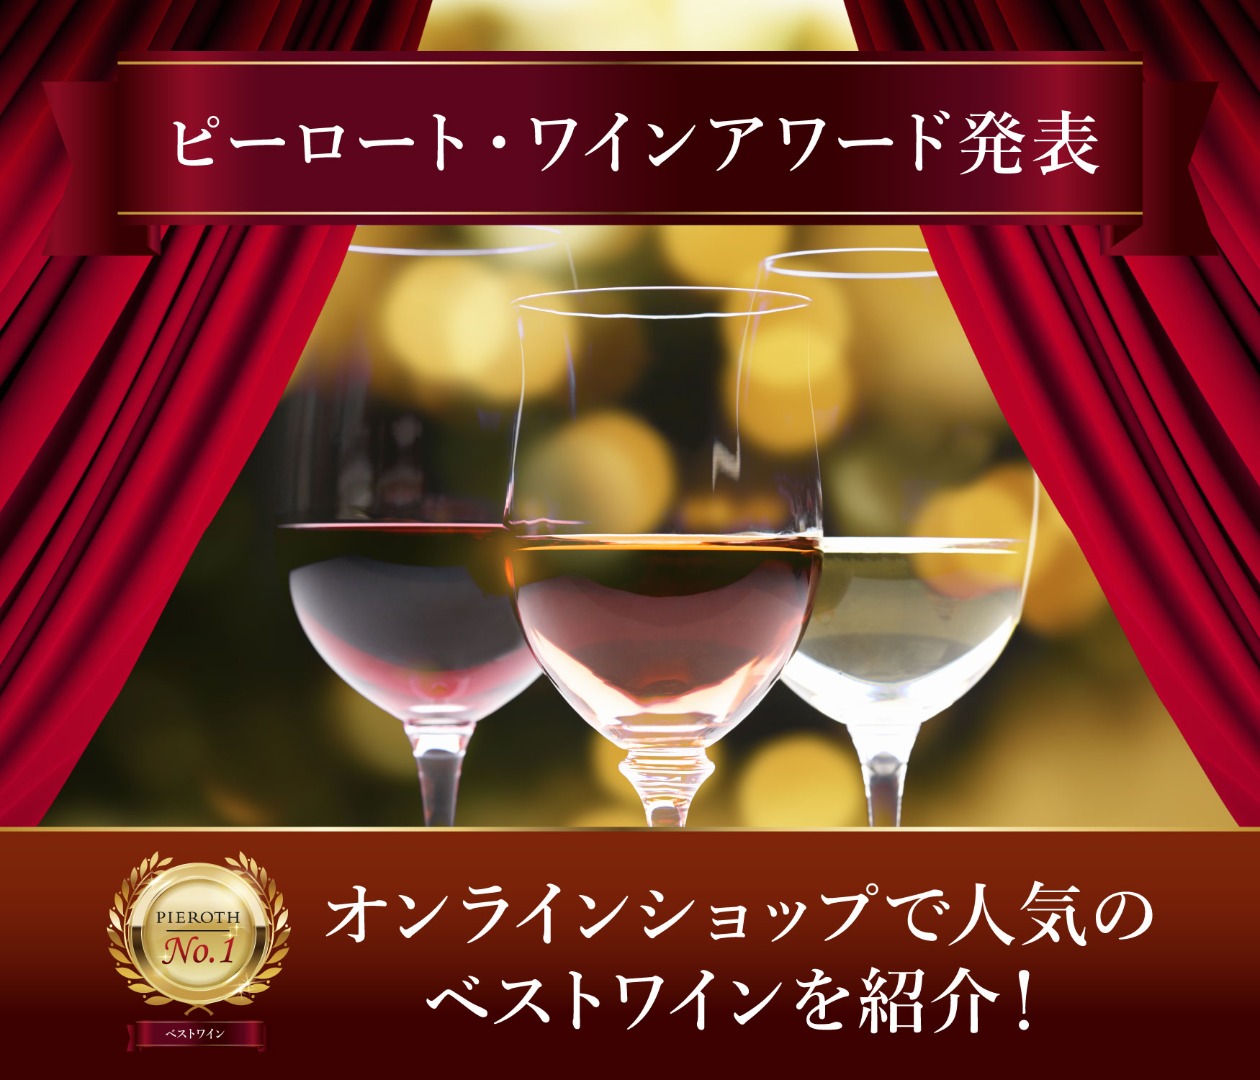 ピーロート・ワインアワード 発表！ピーロート・ジャパンオンラインショップで人気のベストワインをご紹介します。